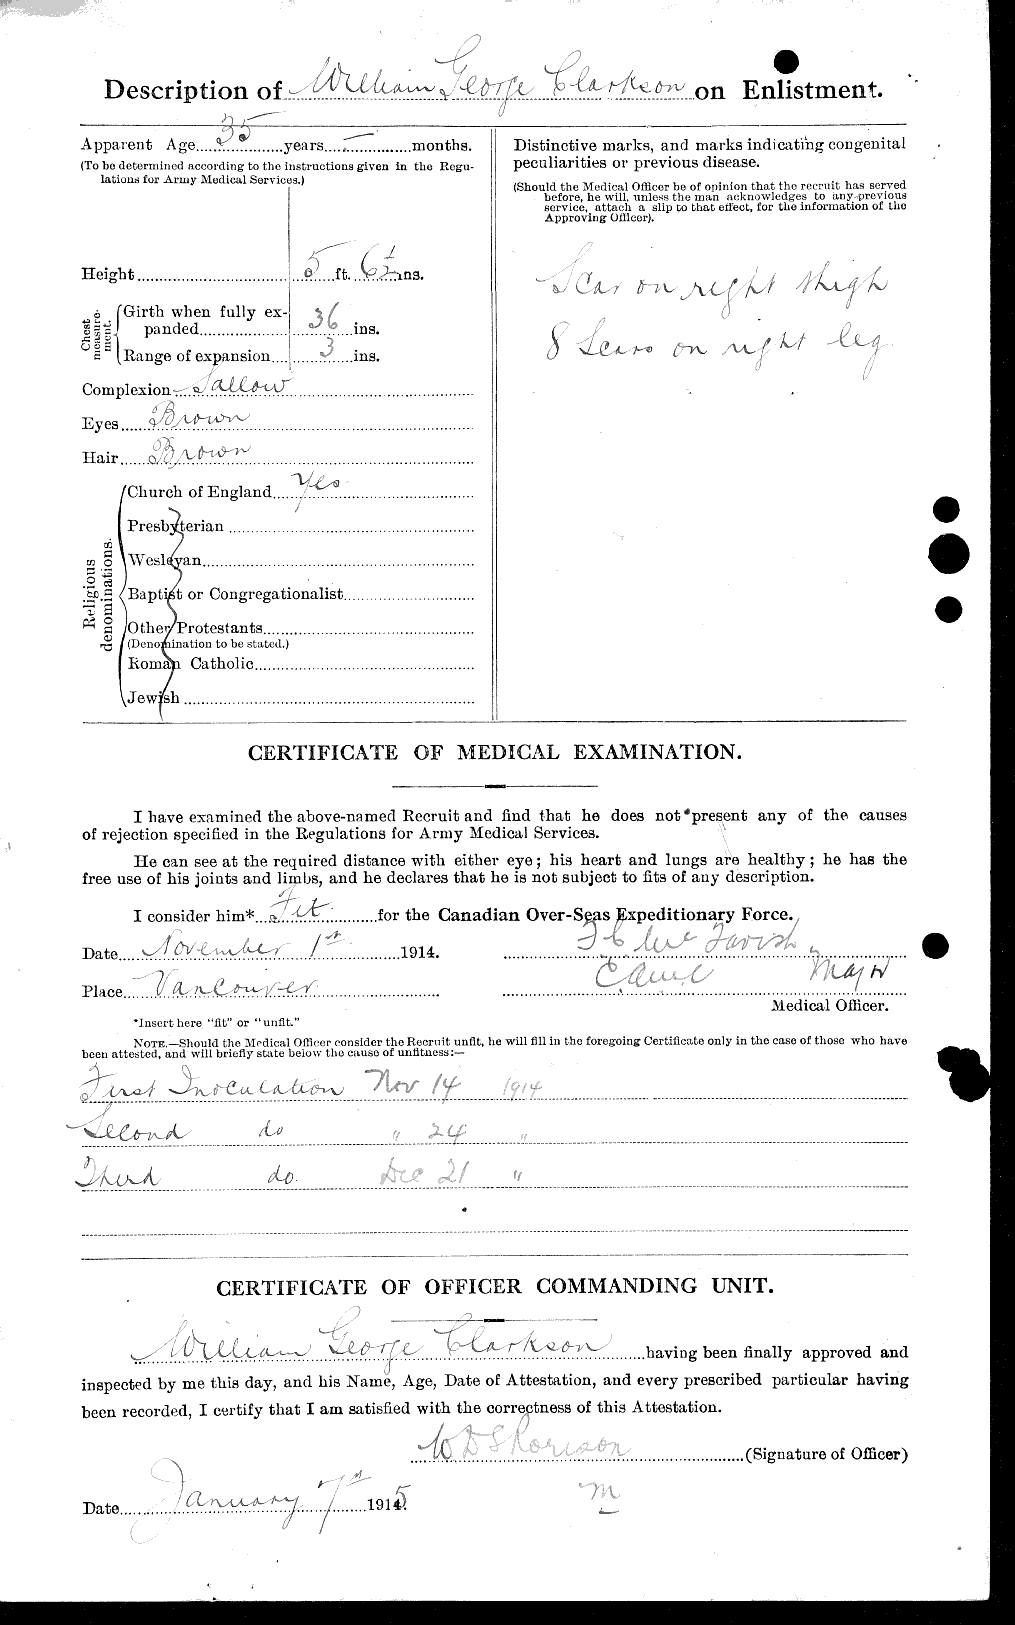 Dossiers du Personnel de la Première Guerre mondiale - CEC 019023b